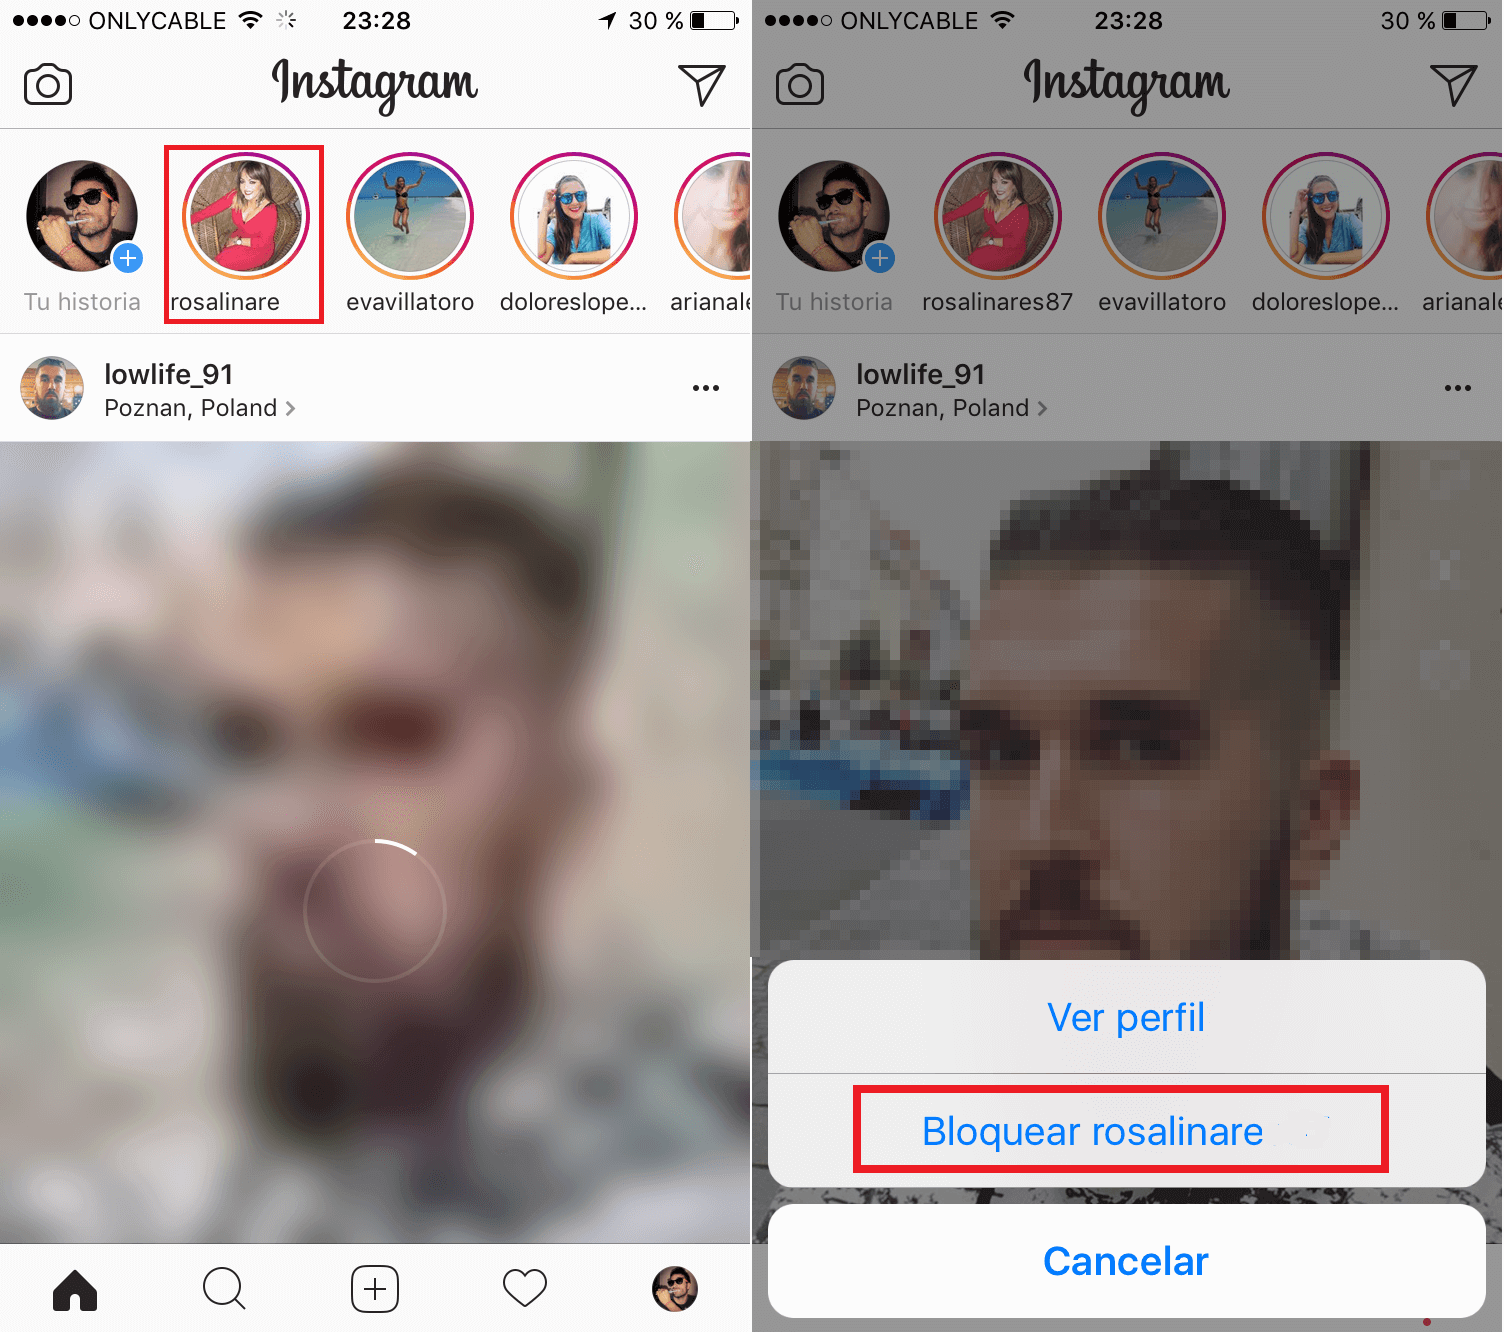 como bloquear las historias de un usuario especifico de Instagram